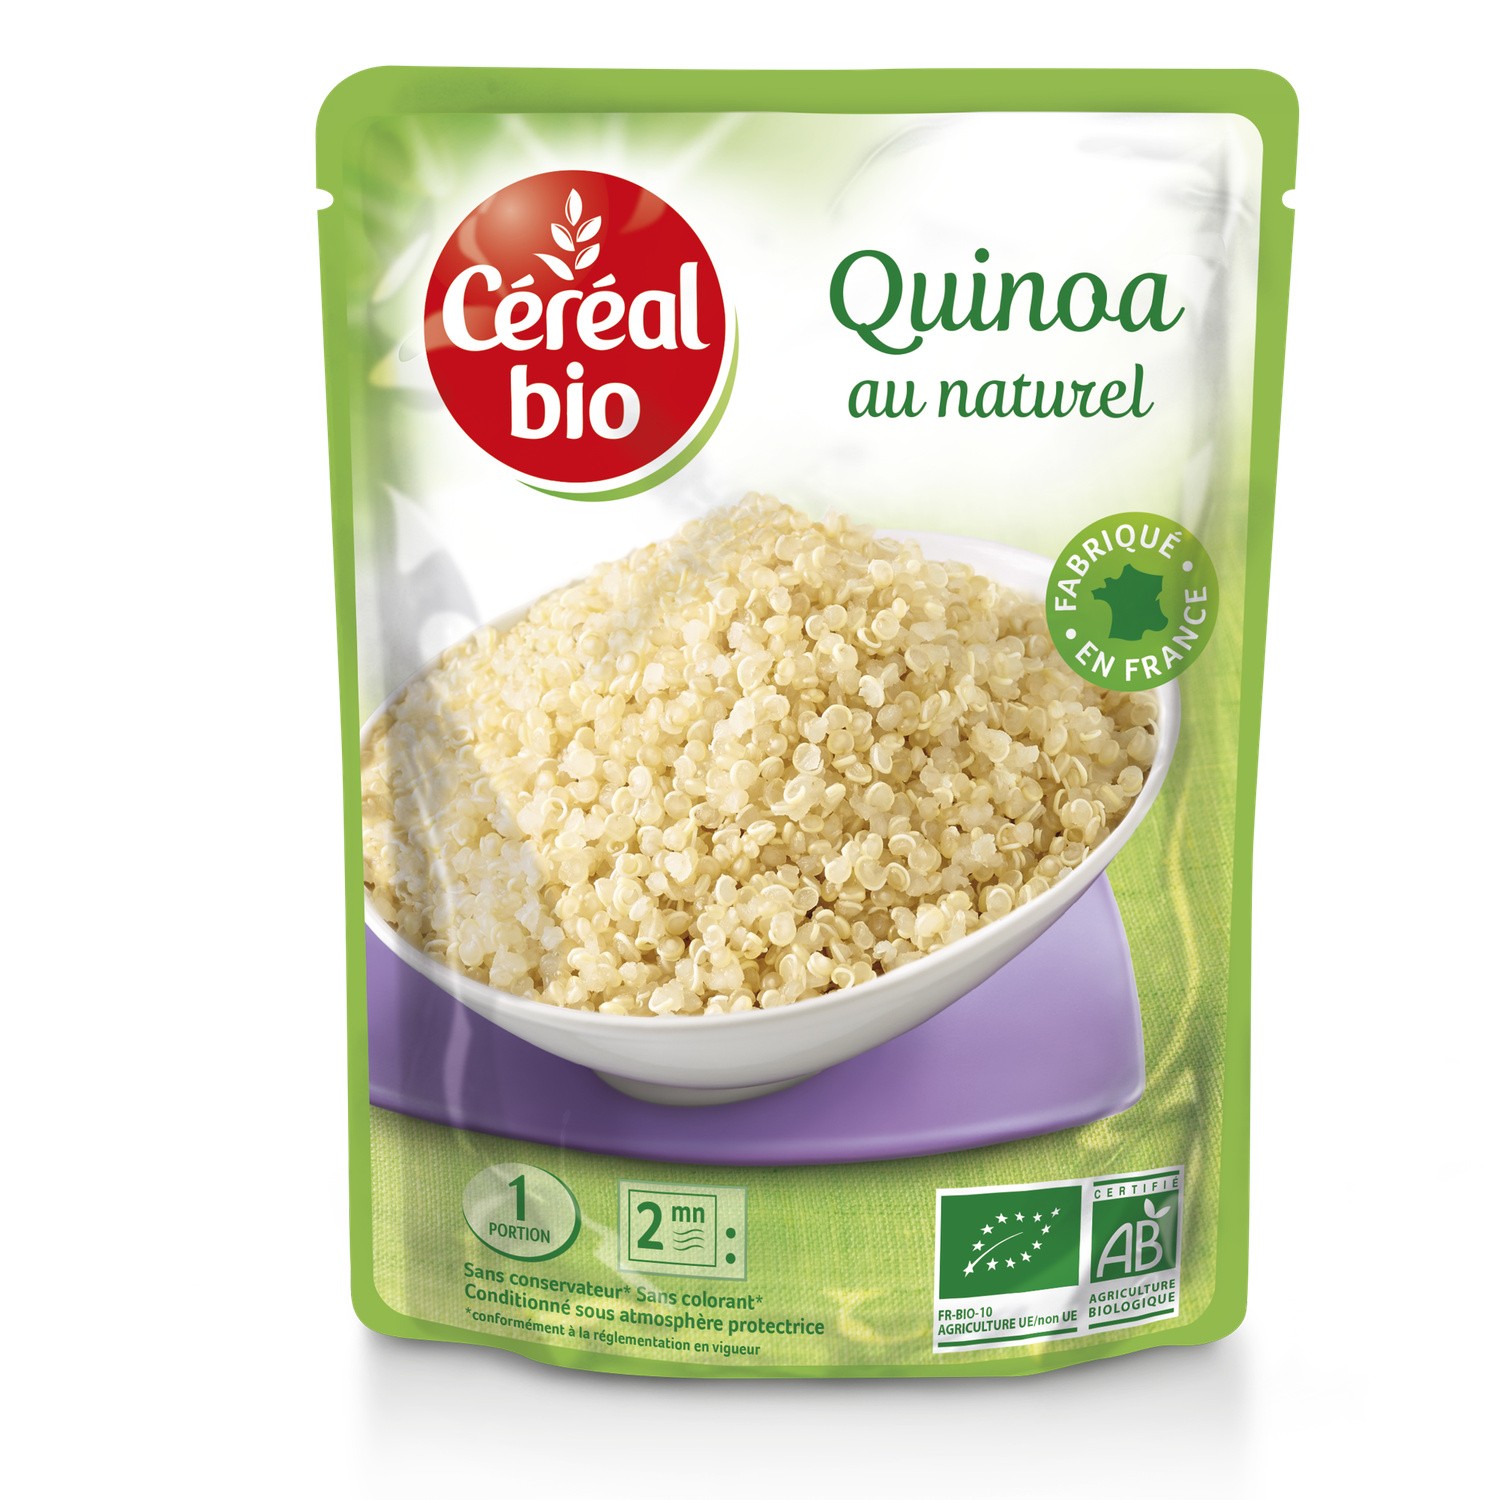 Quinoa au naturel